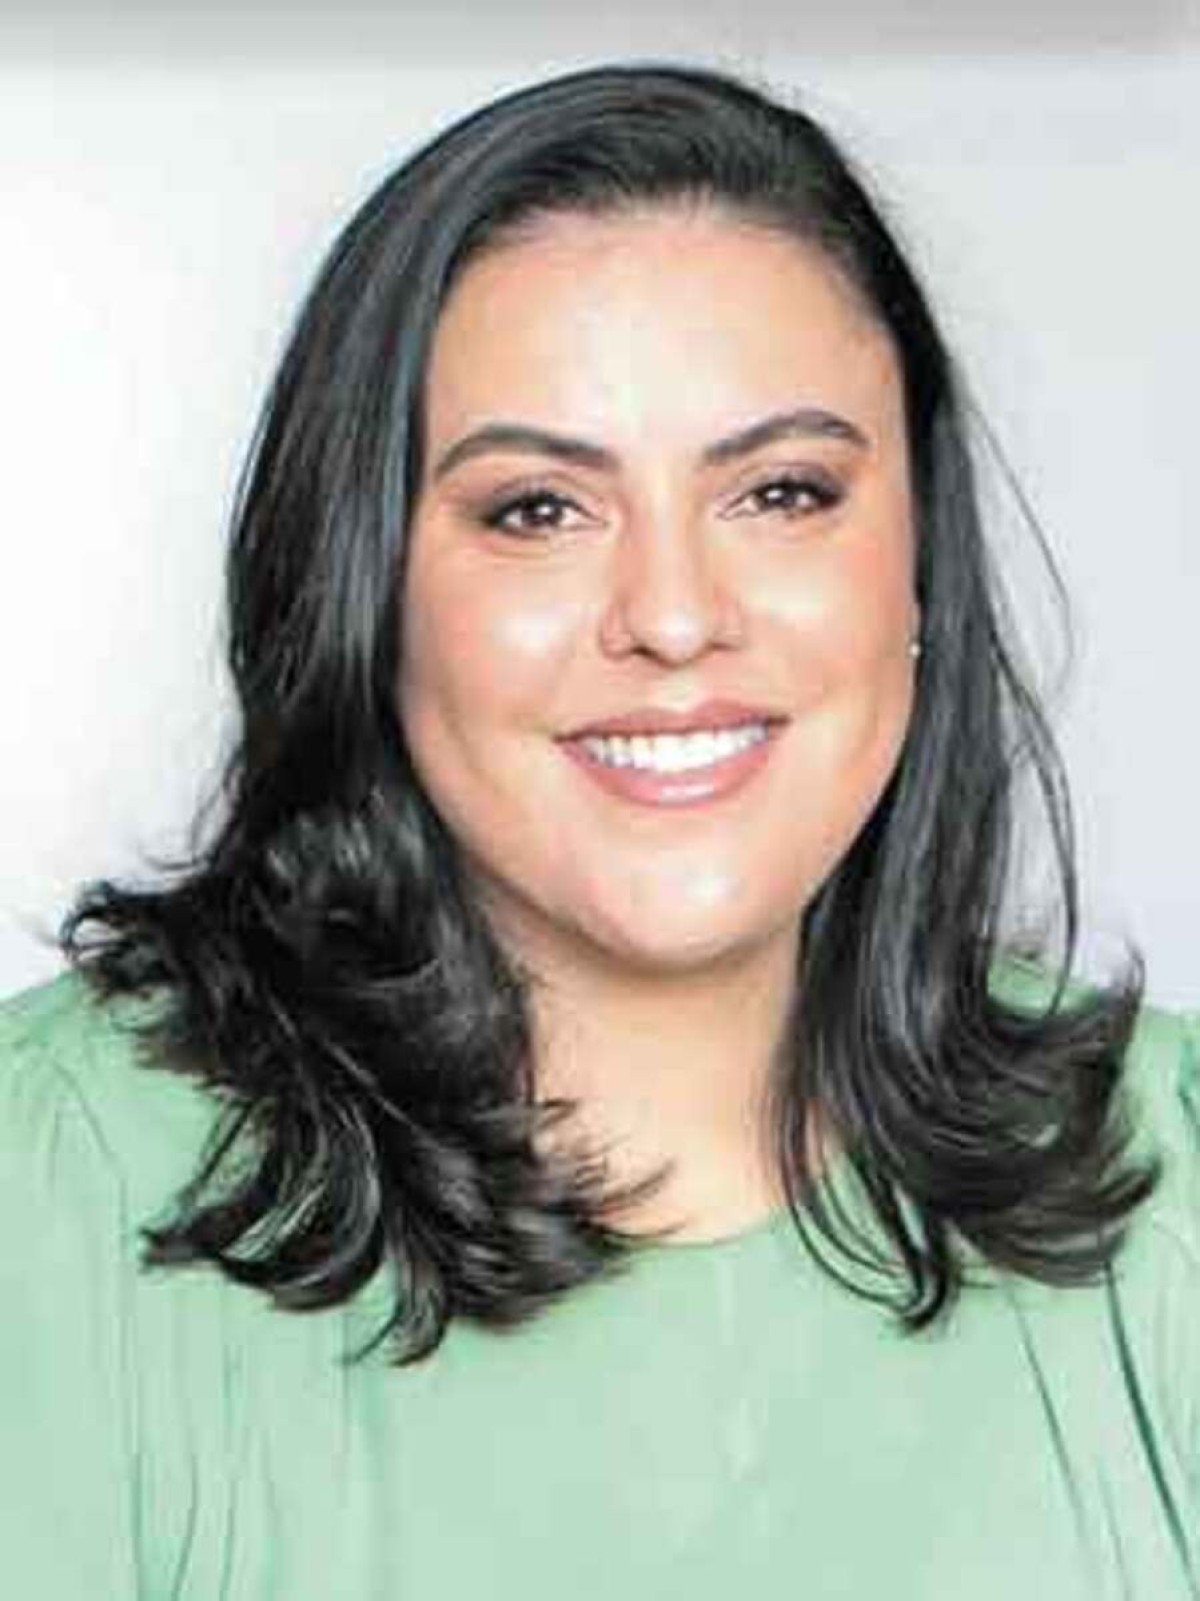 Laura Brito, Advogada especialista em Direito de Família e das Sucessões, possui doutorado e mestrado pela USP e atua como professora em cursos de pós-graduação, além de ser palestrante, pesquisadora e autora de livros e artigos na área 